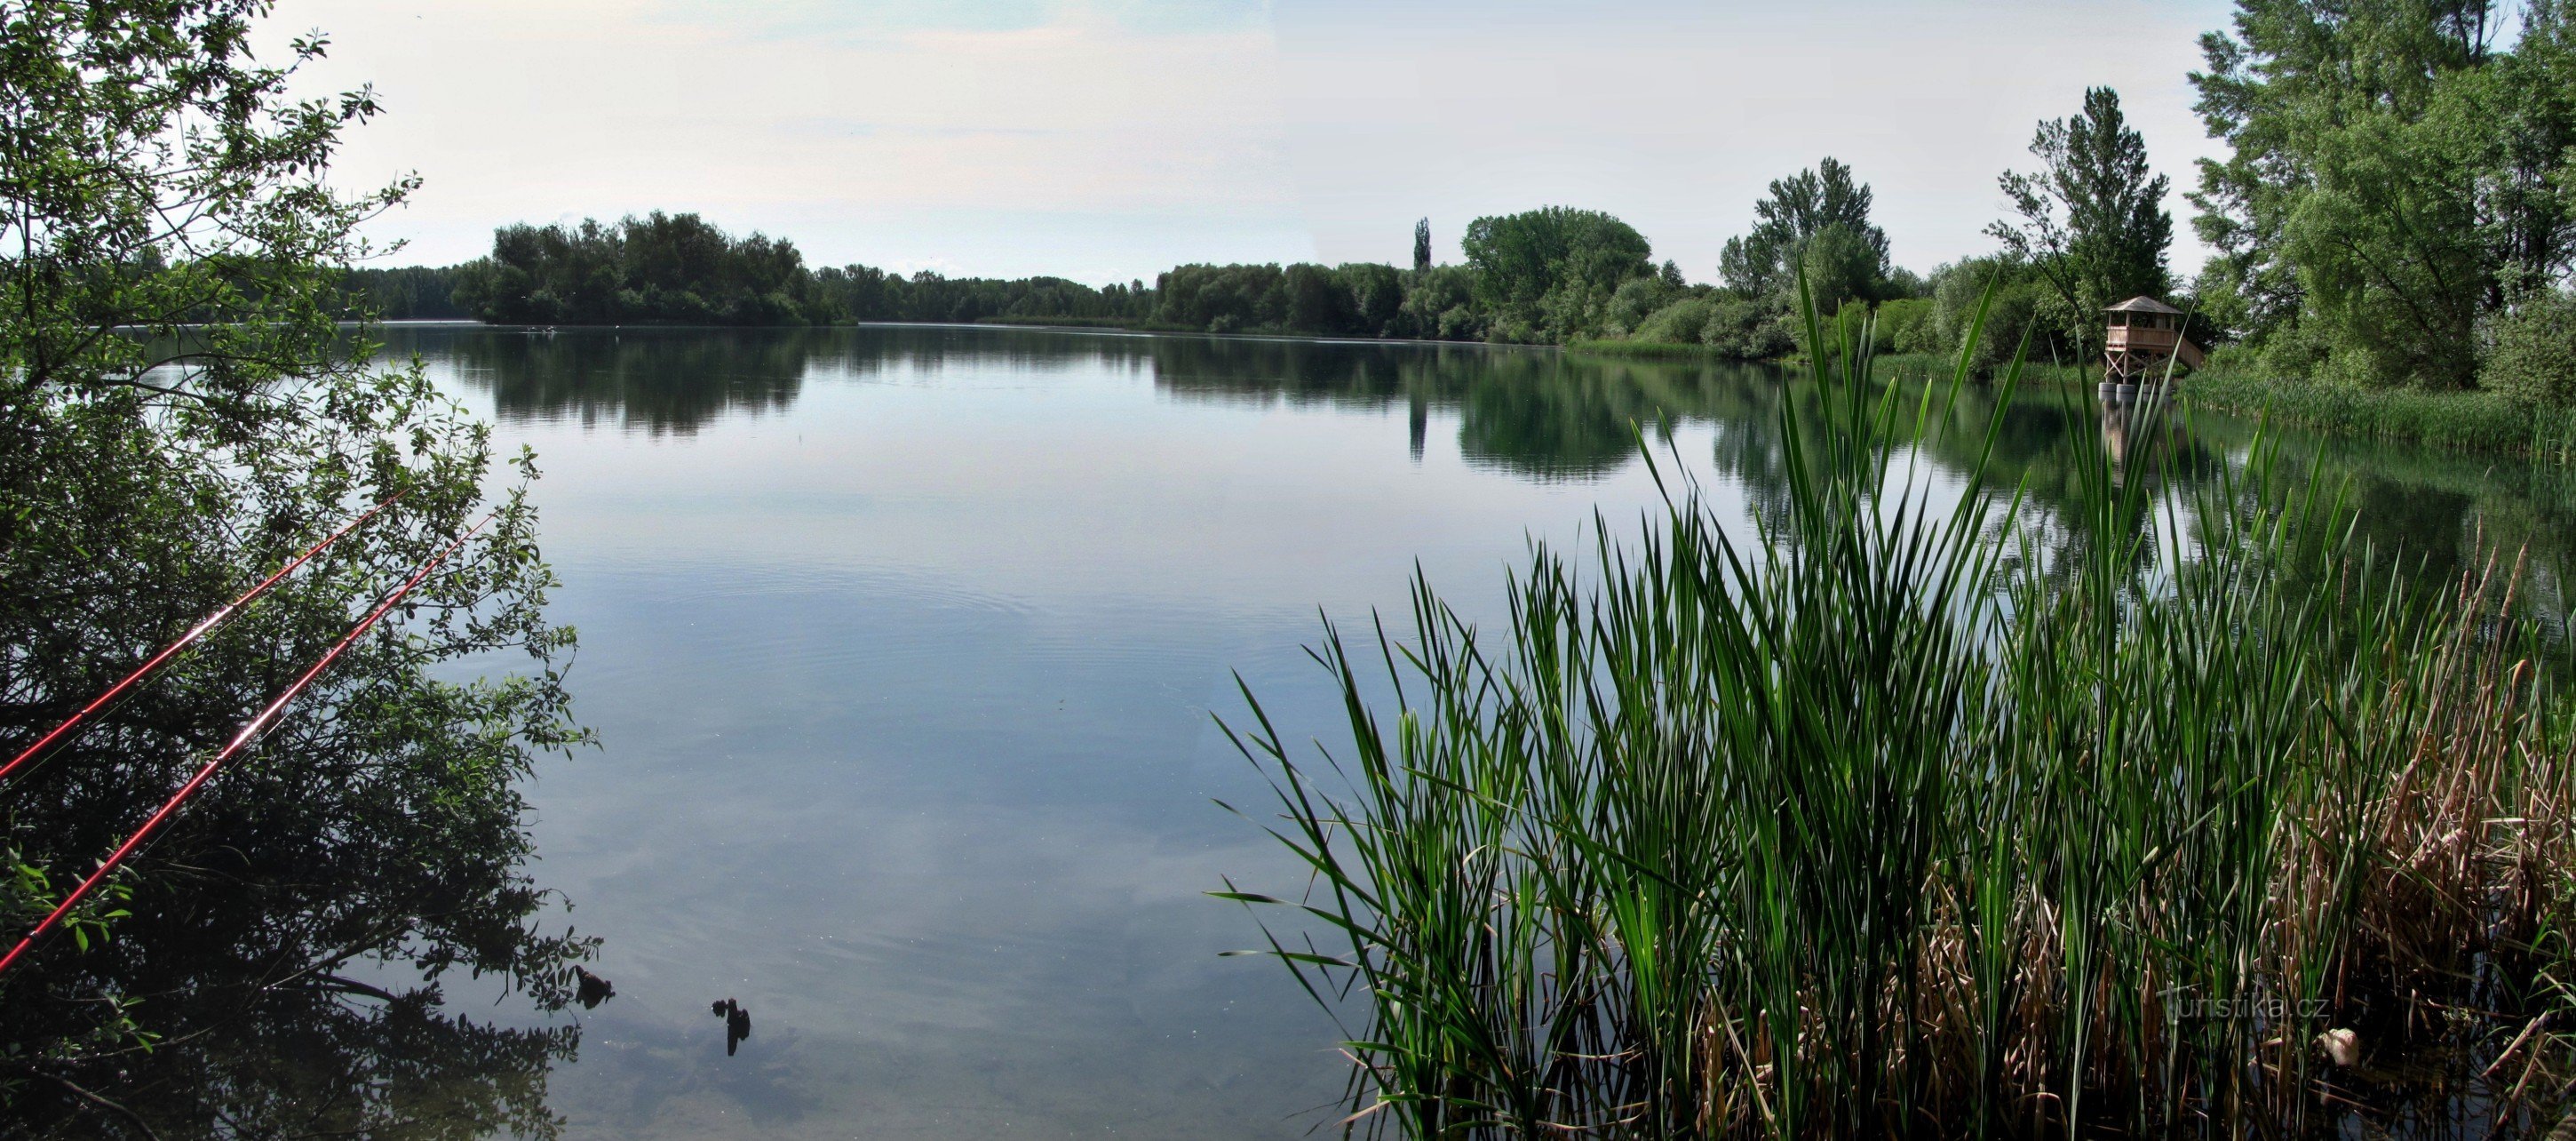 Chomoutov (nära Olomouc) - fågelobservatorium vid Chomoutovsjön